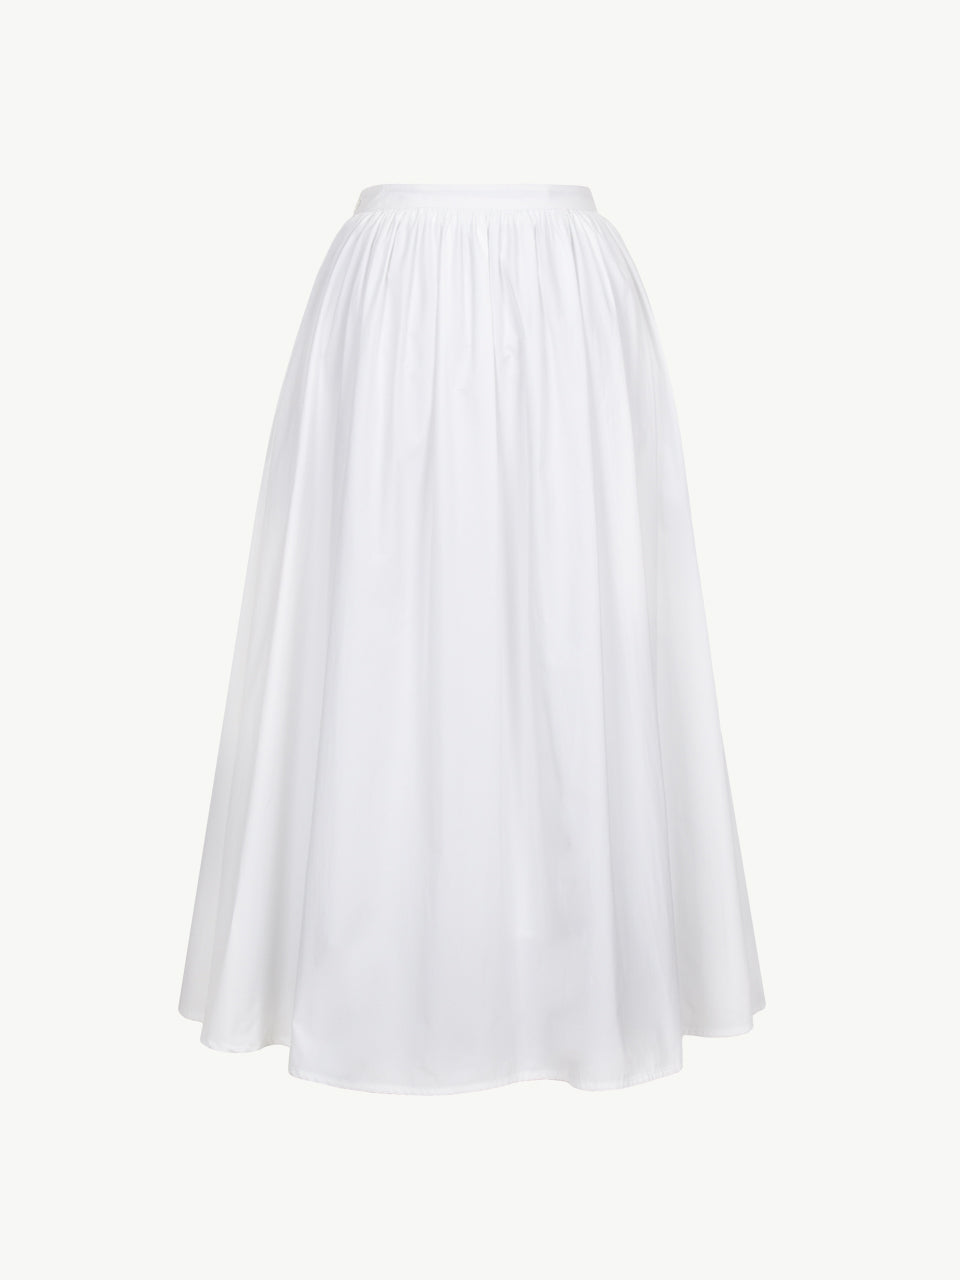 Full Volume Skirt In White